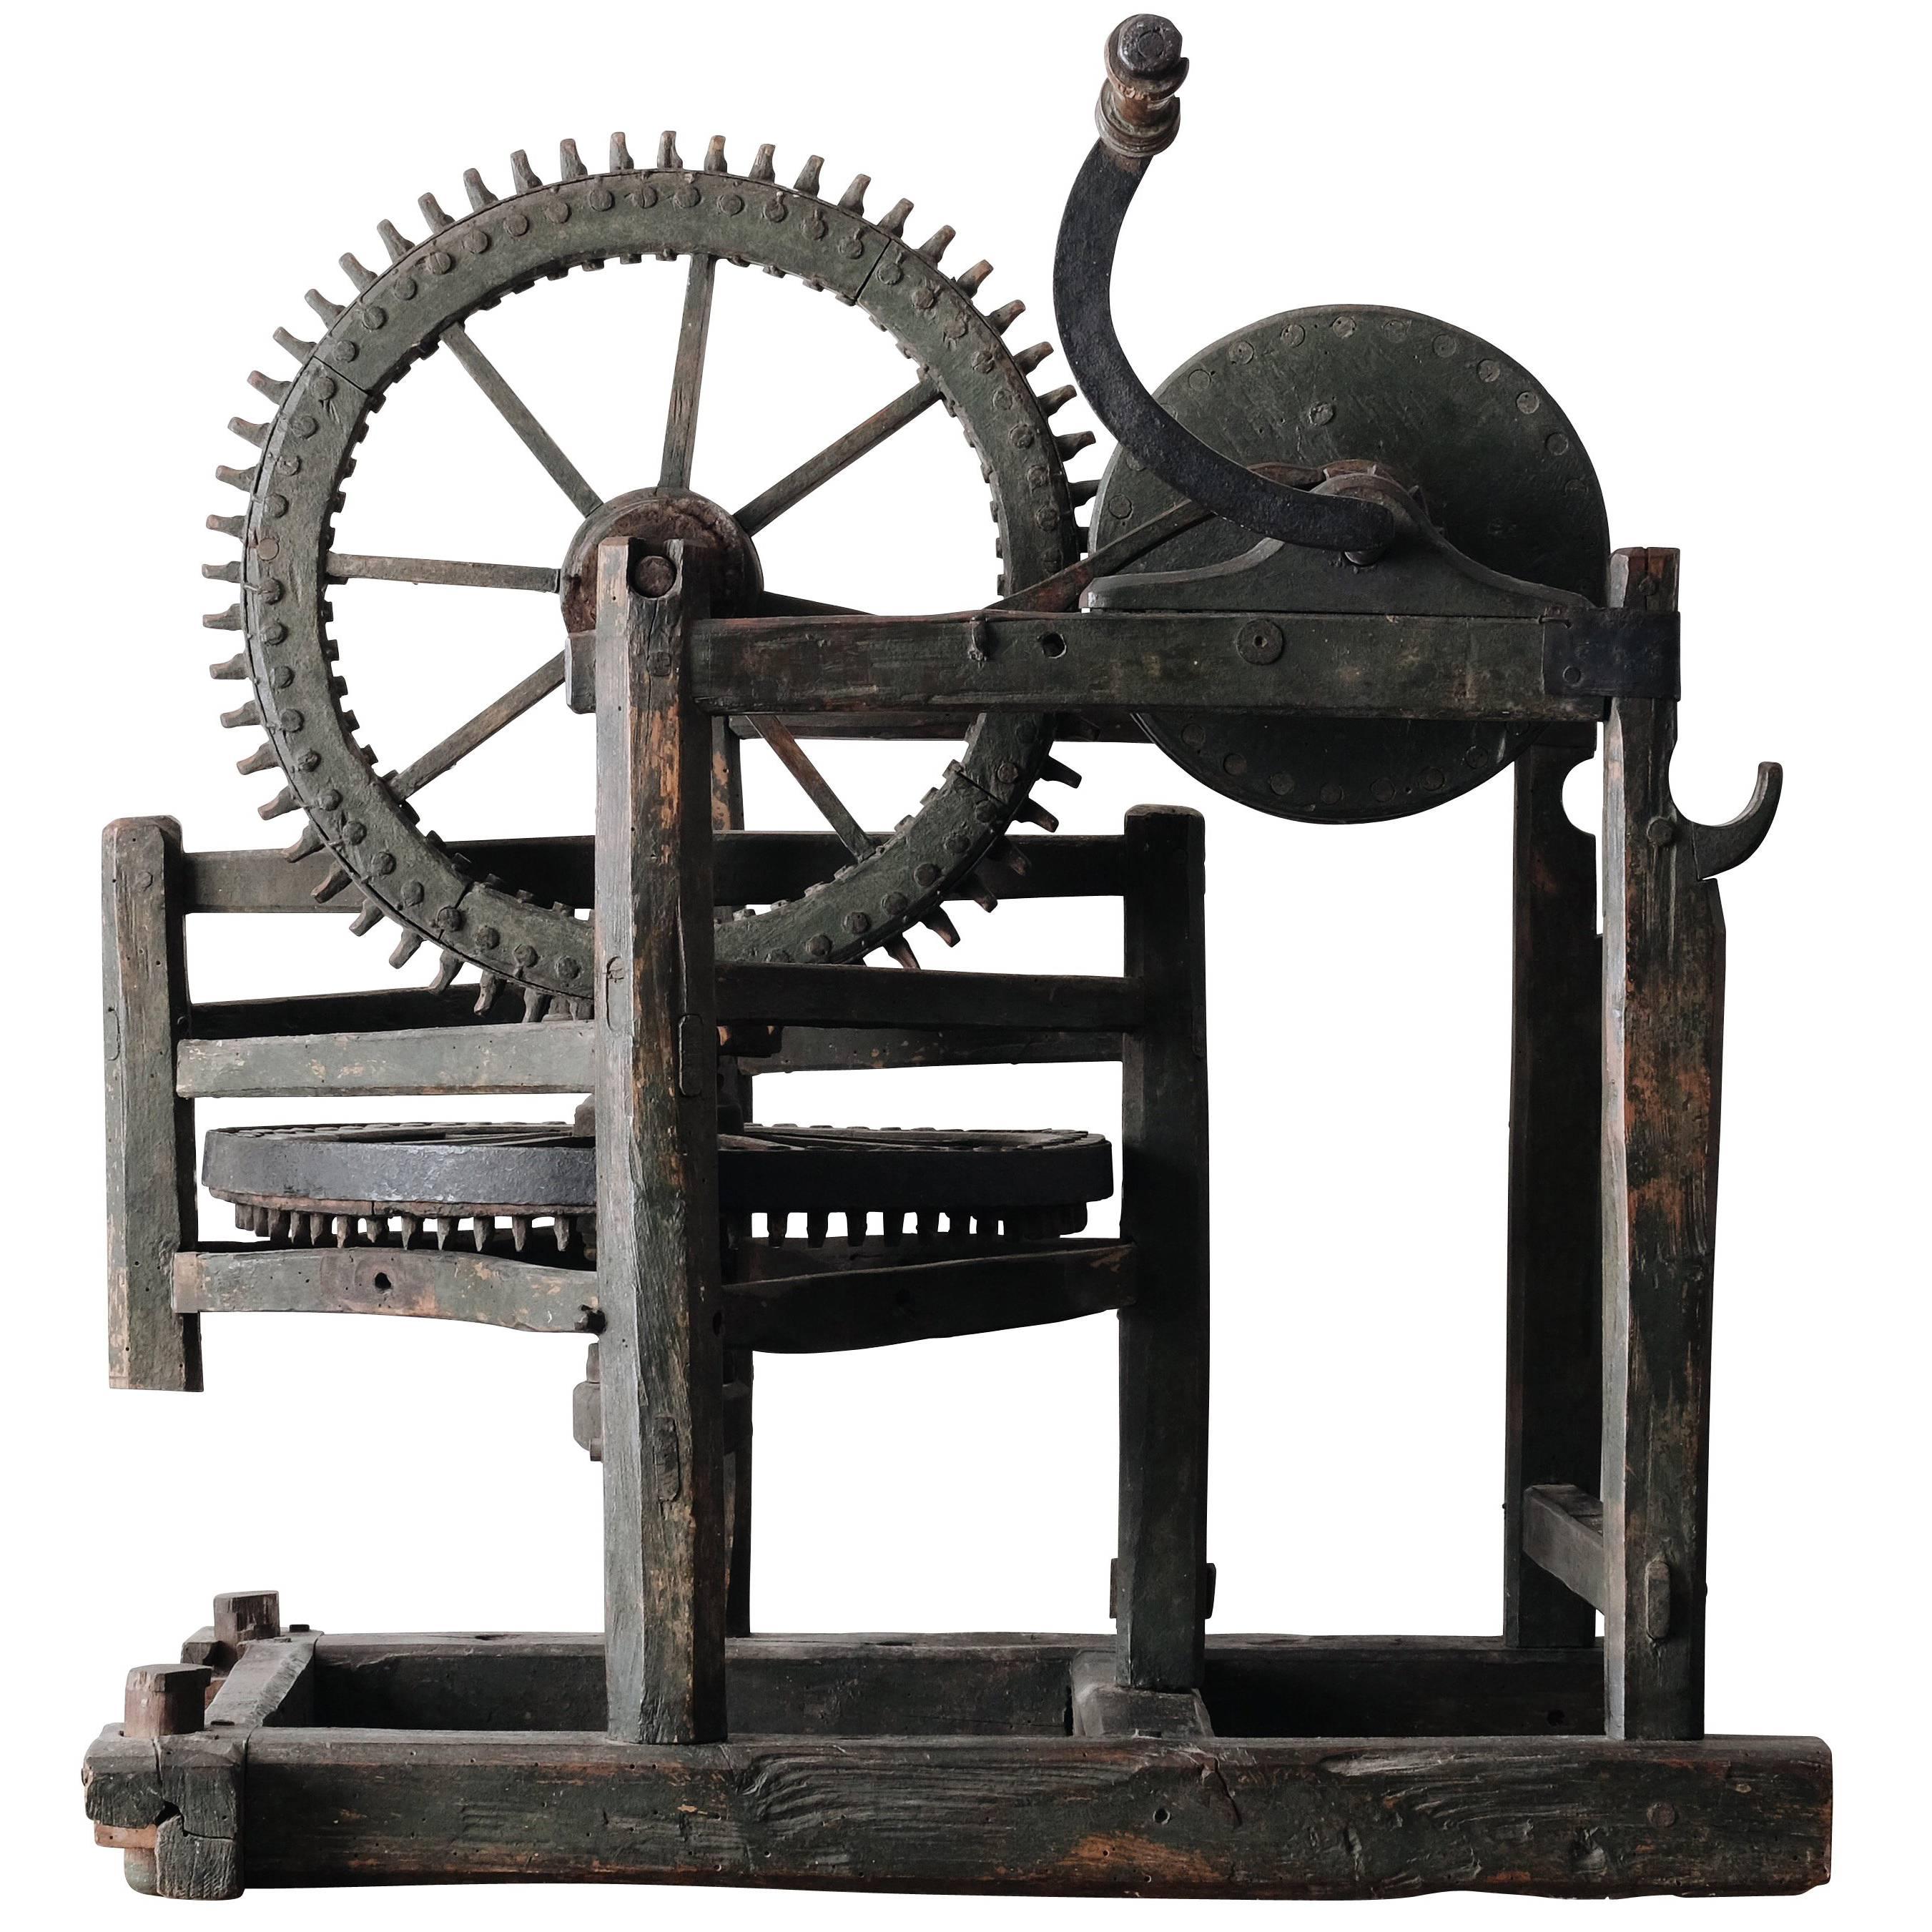 18th Century Hand Powered Machine